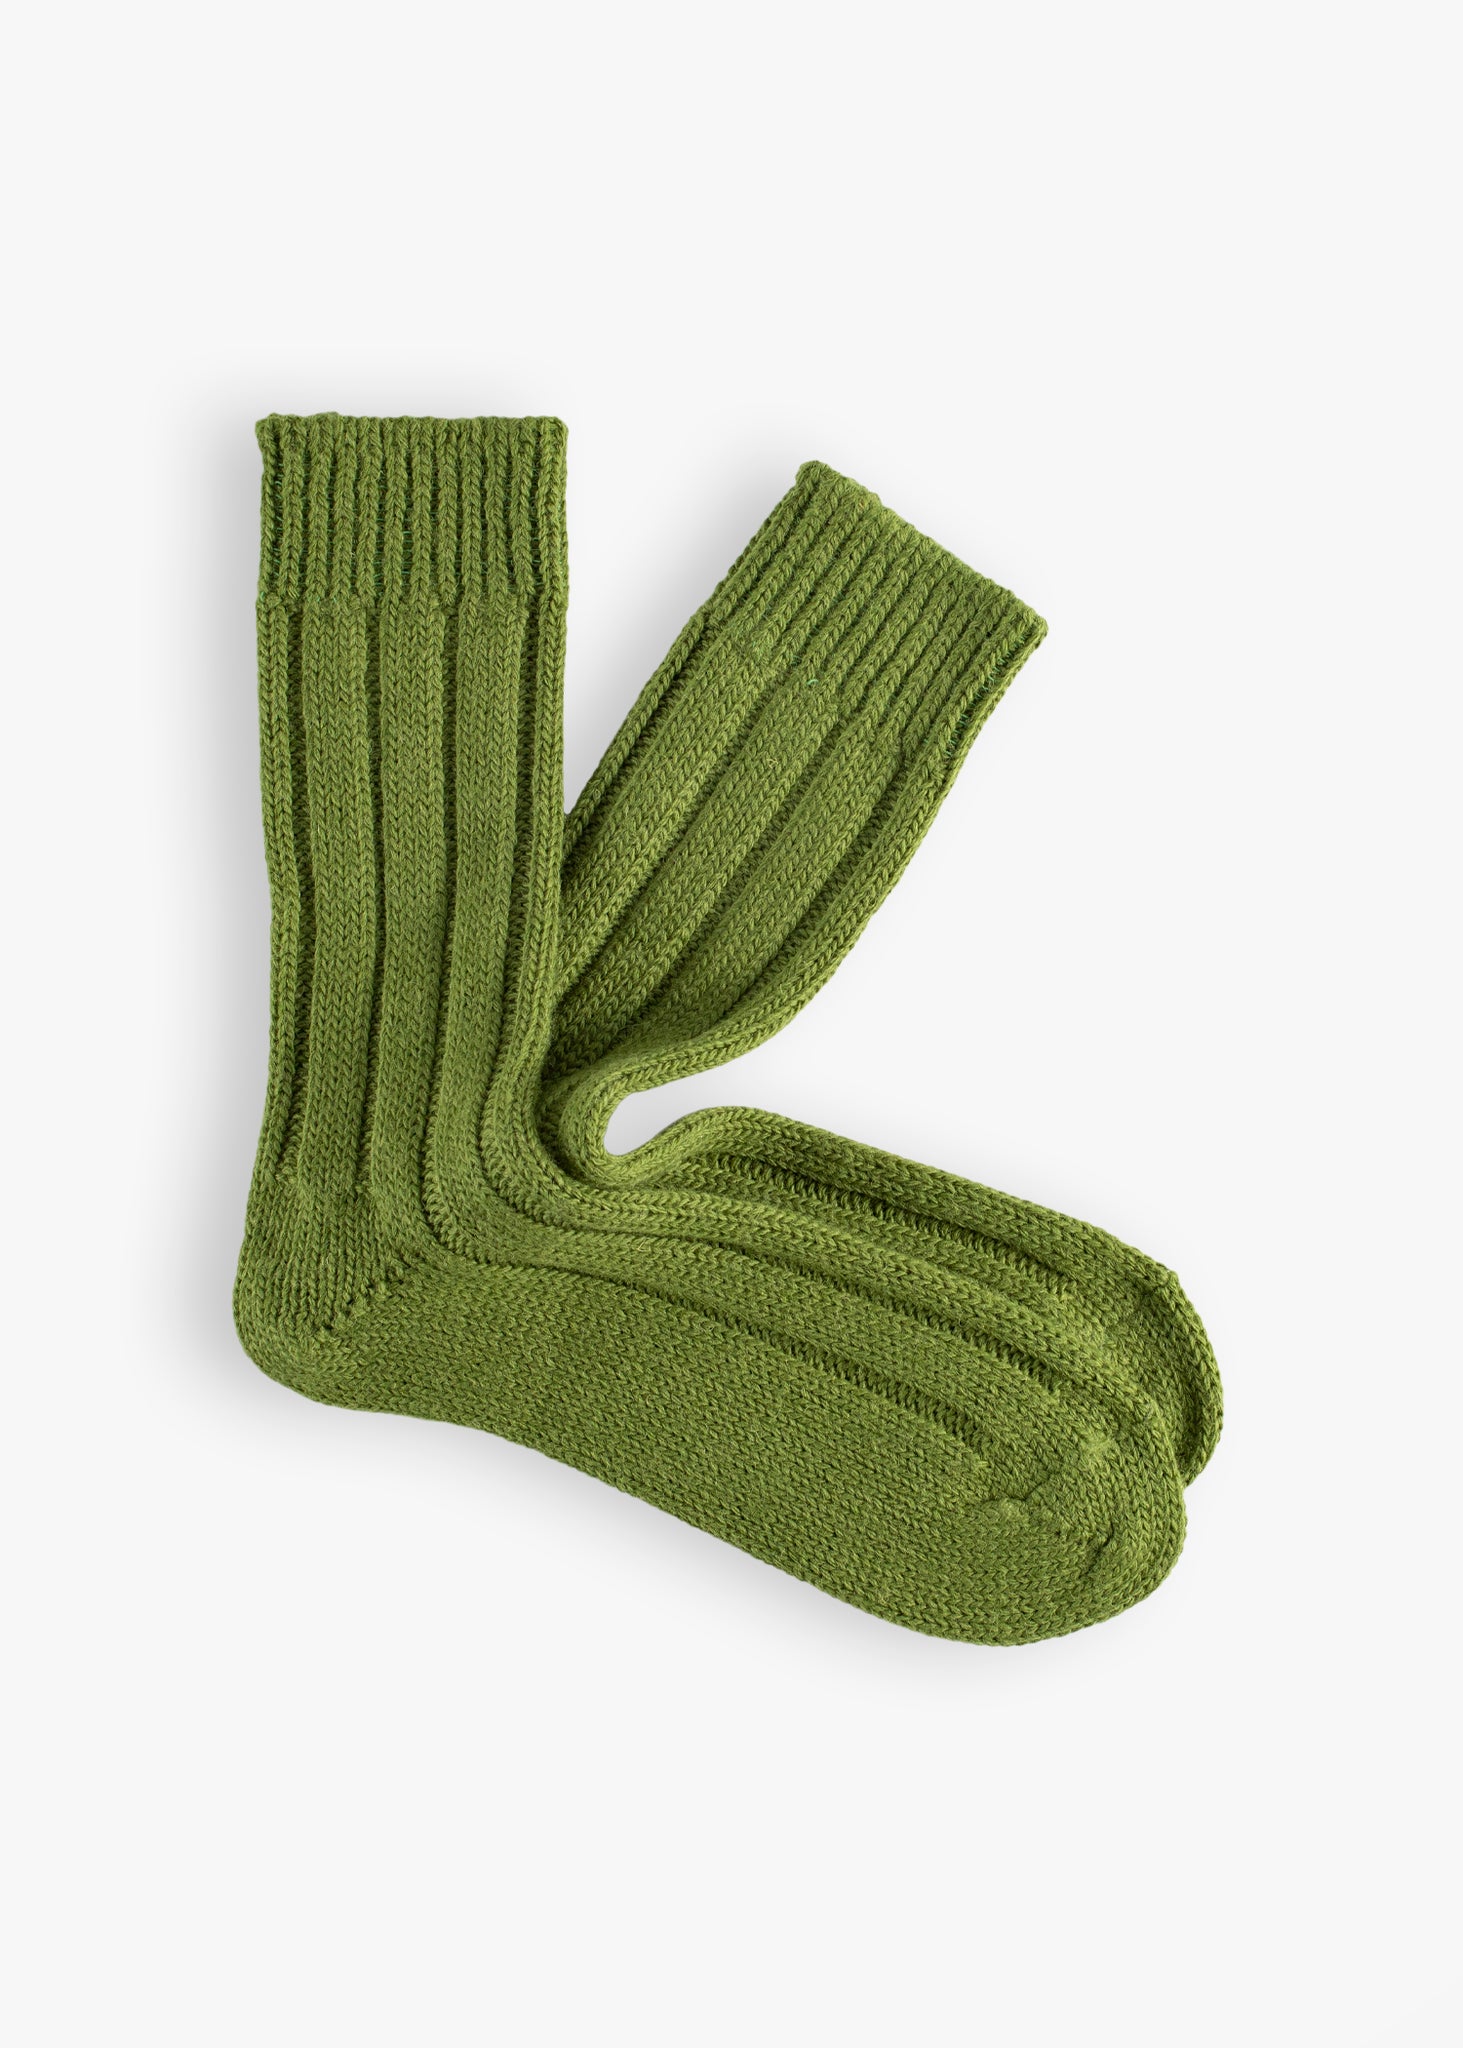 Thunders Love Wool Shetland Light Green Socks